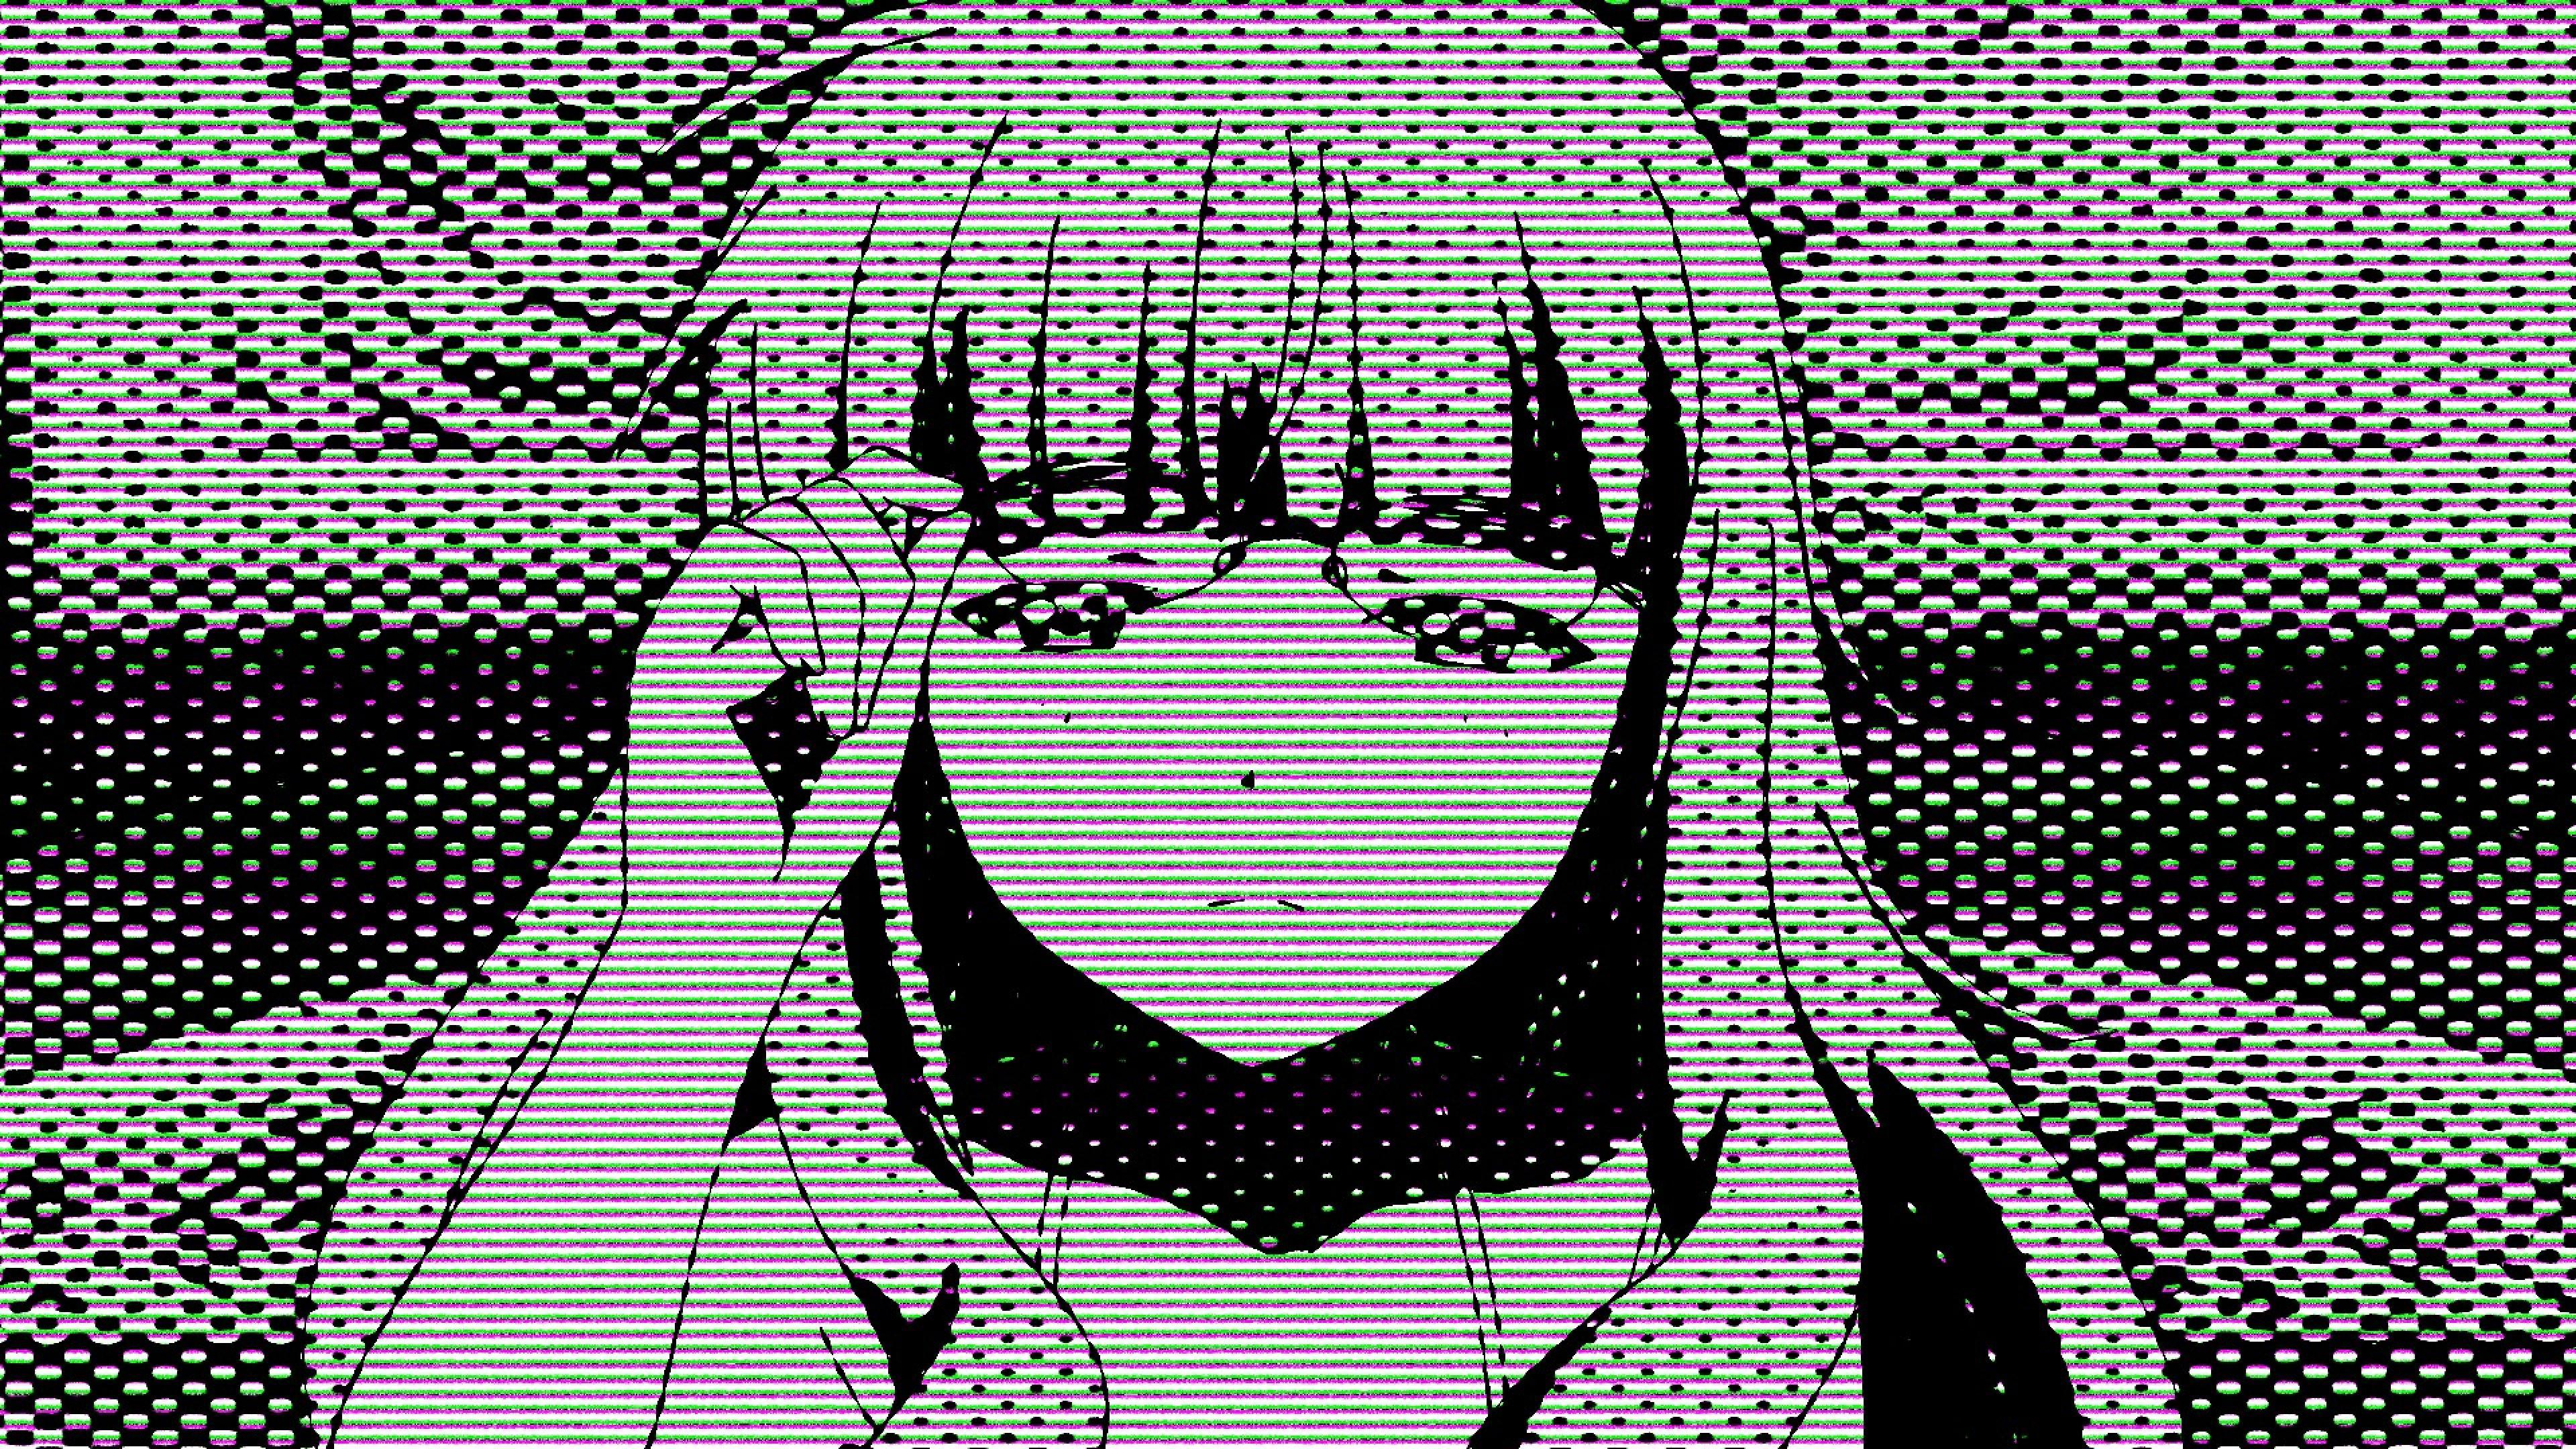 Dark Anime Aesthetic Desktop Wallpapers on WallpaperDog